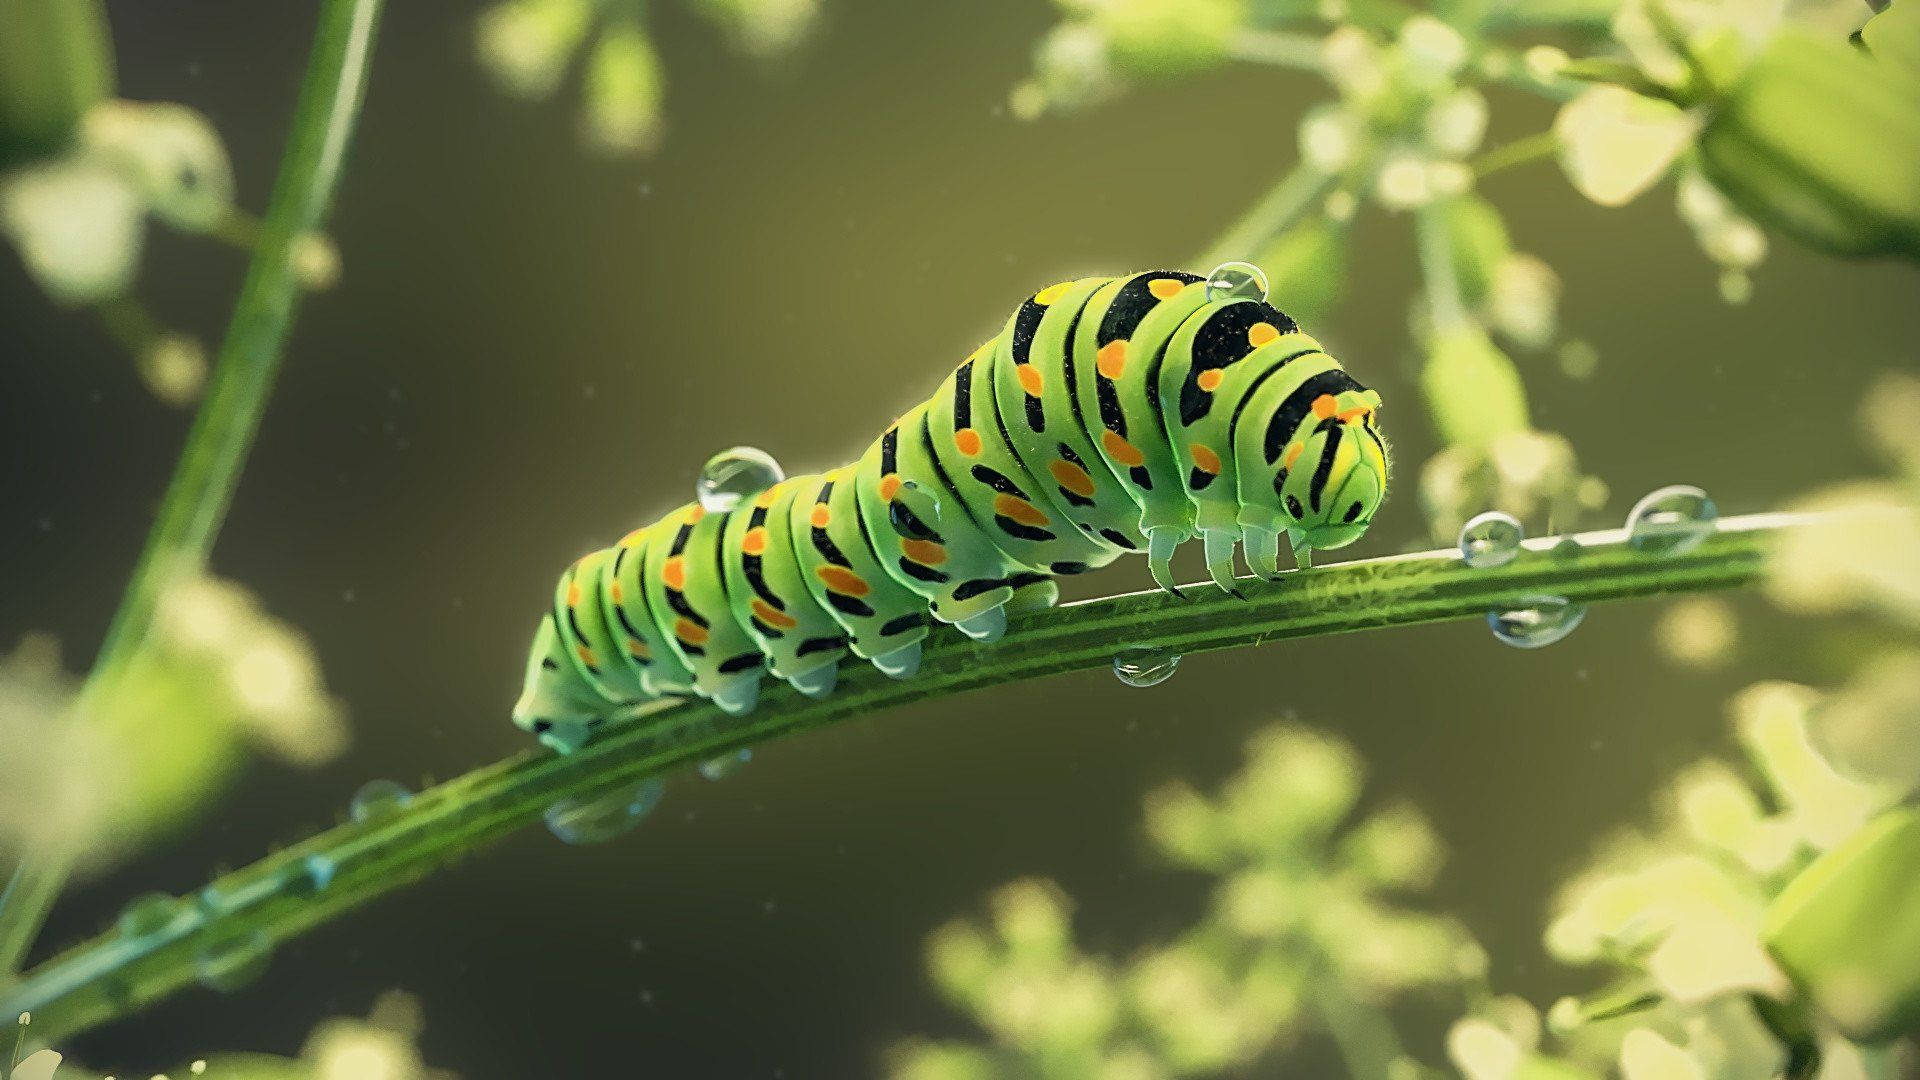 Caterpillar In Wet Green Stem Background